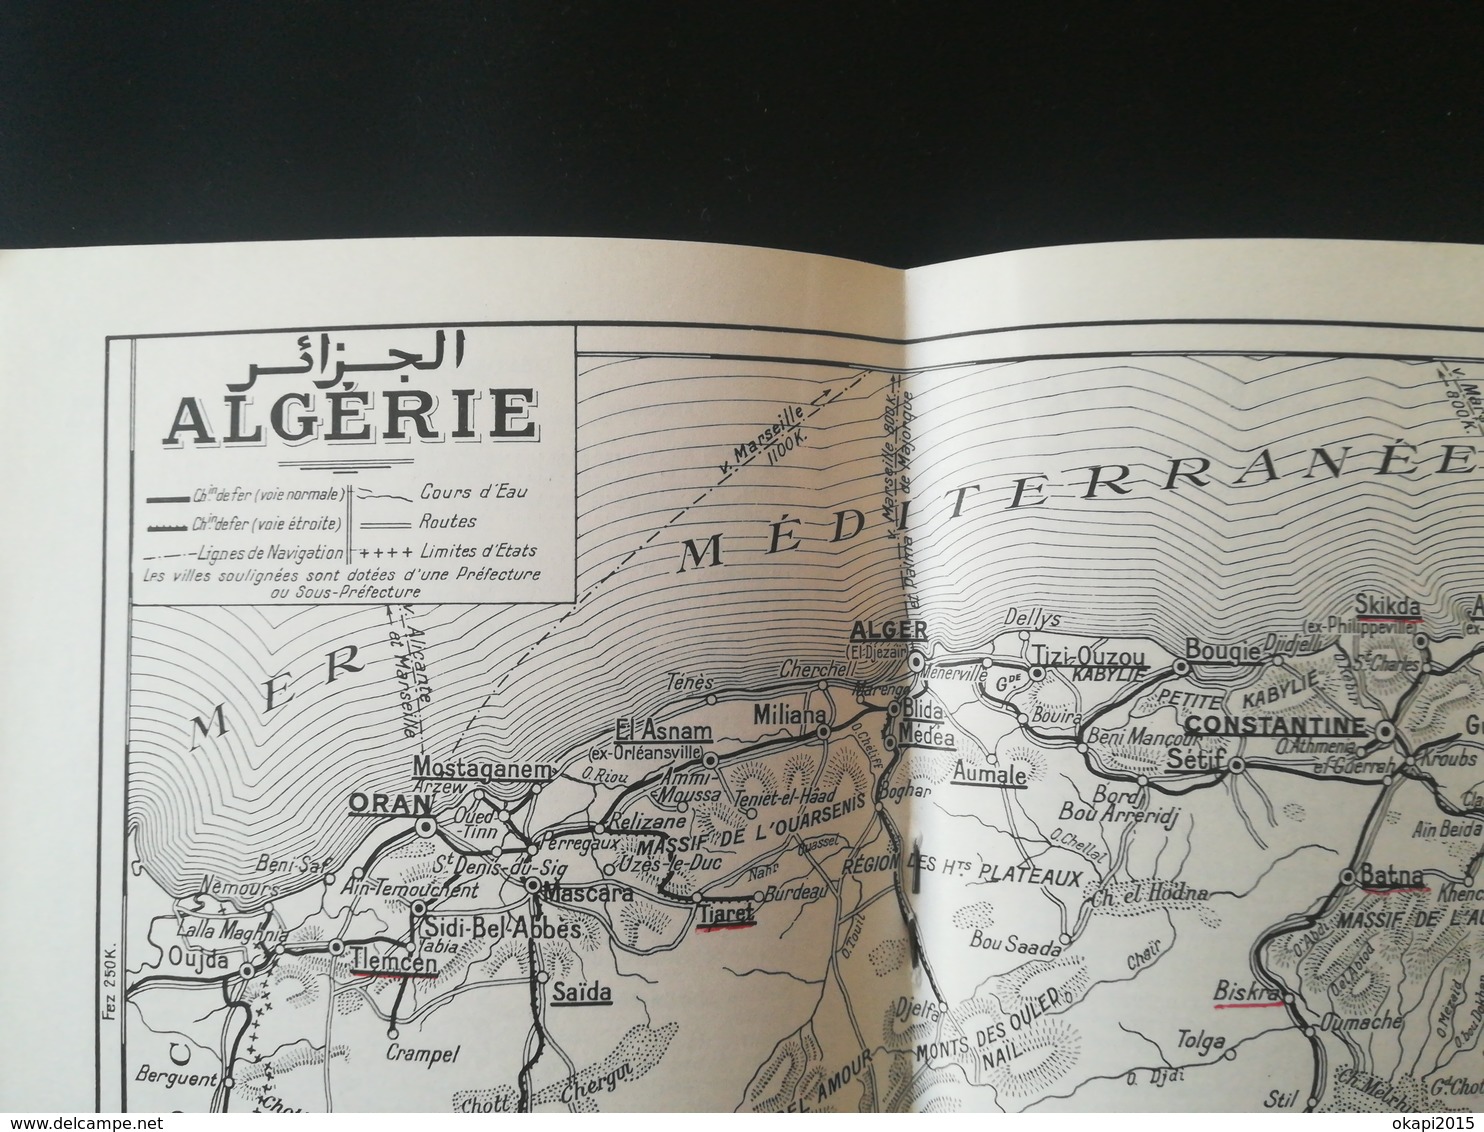 PLAN DE VILLE ALGER ALGÉRIE AFRIQUE du Nord Maghreb cartes carte guide année 1967 ancienne colonie France